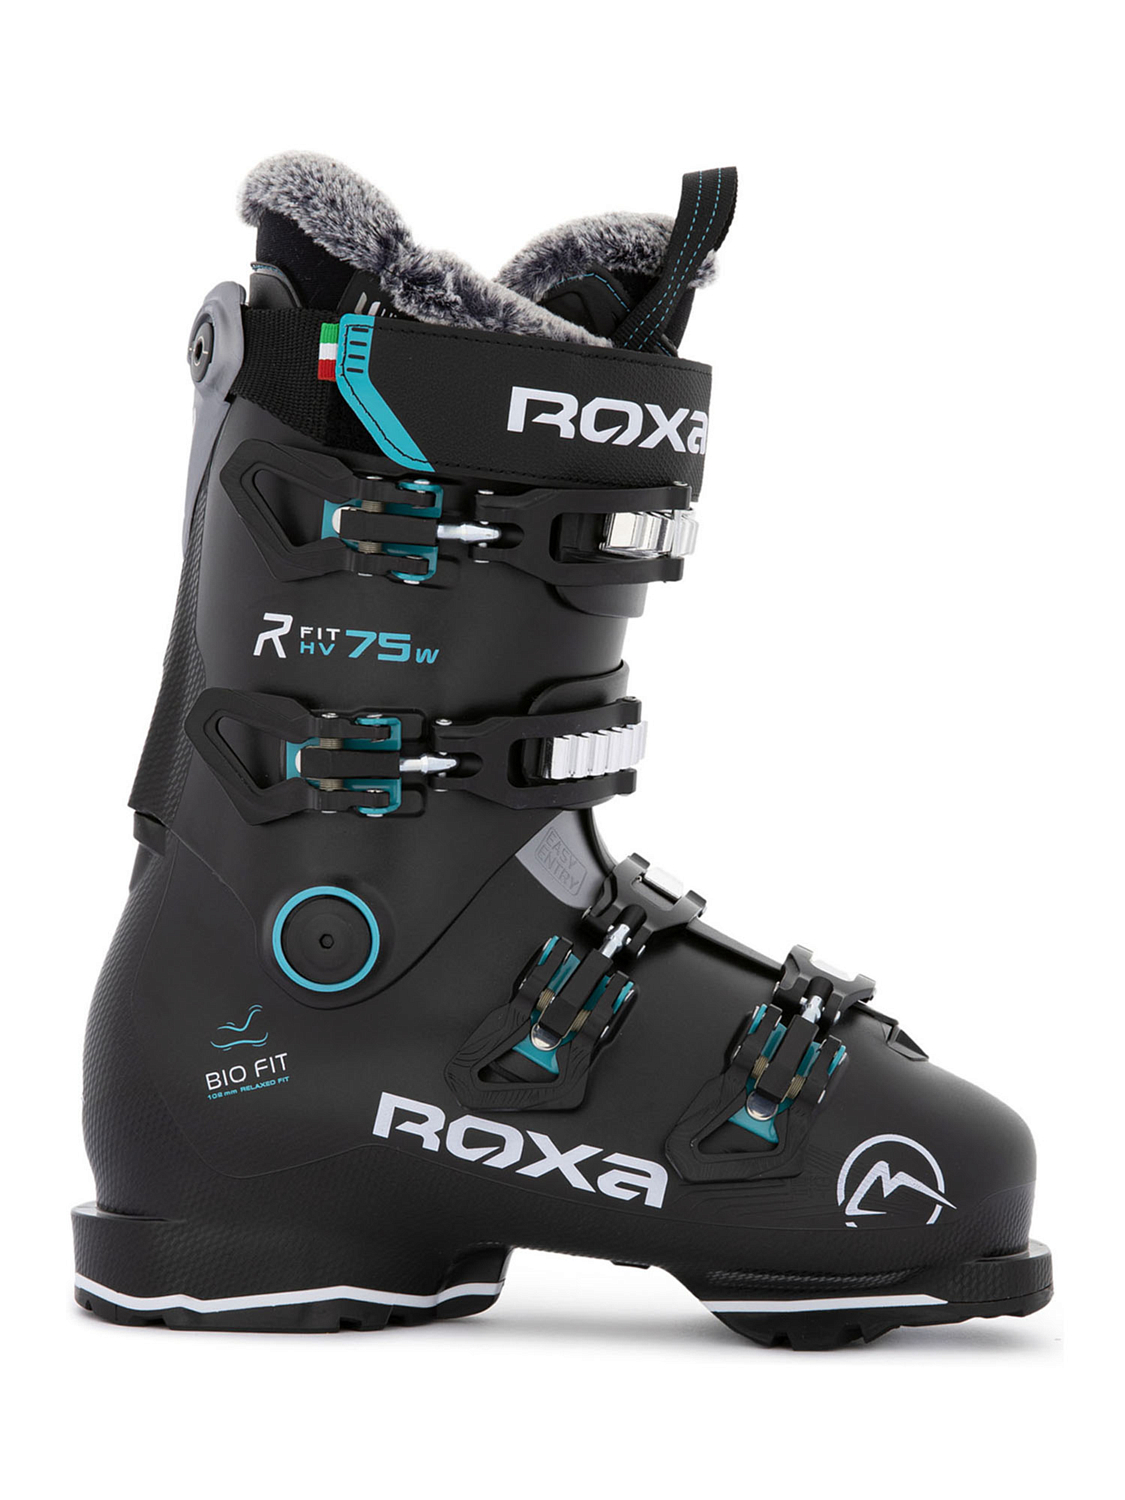 Горнолыжные ботинки ROXA Rfit W 75 Gw Black/Acqua